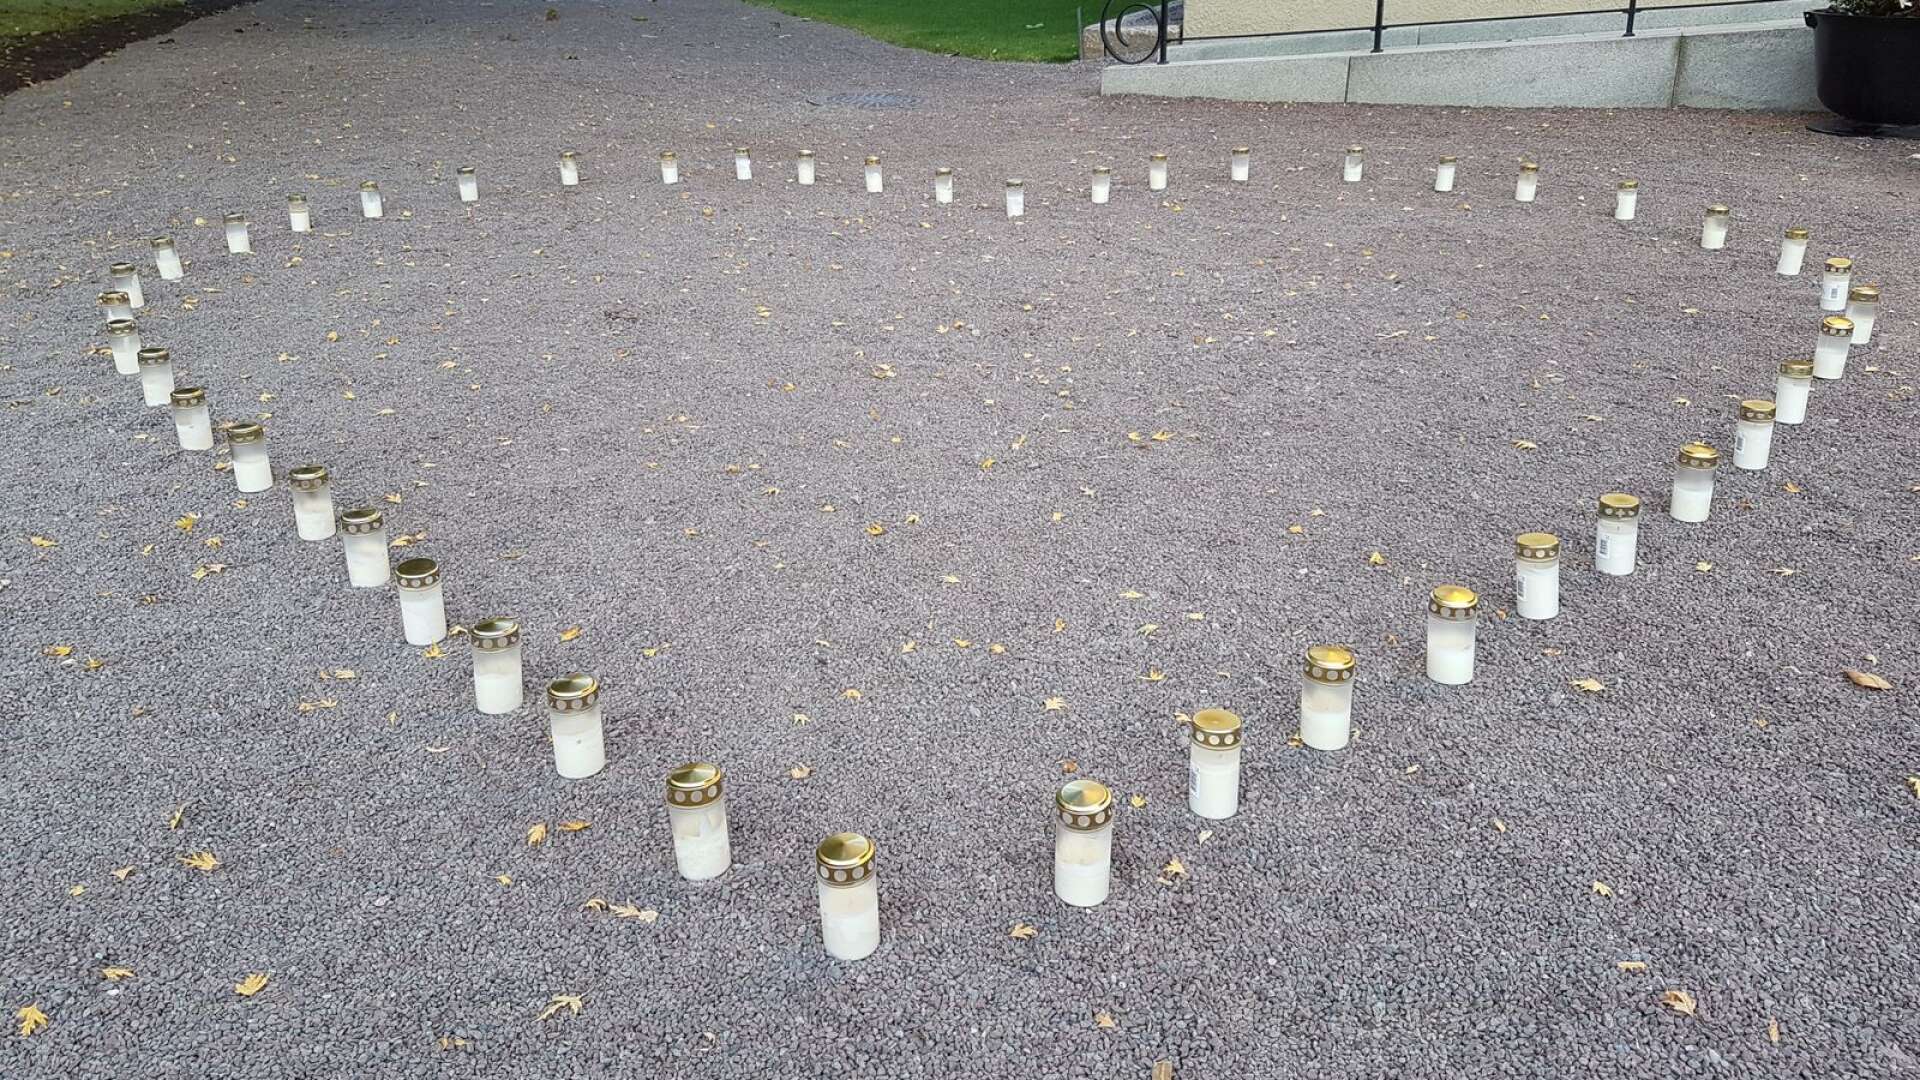 46 ljus tändes utanför Domkyrkan. Ett för varje person som tog sitt liv i Värmland under 2020.